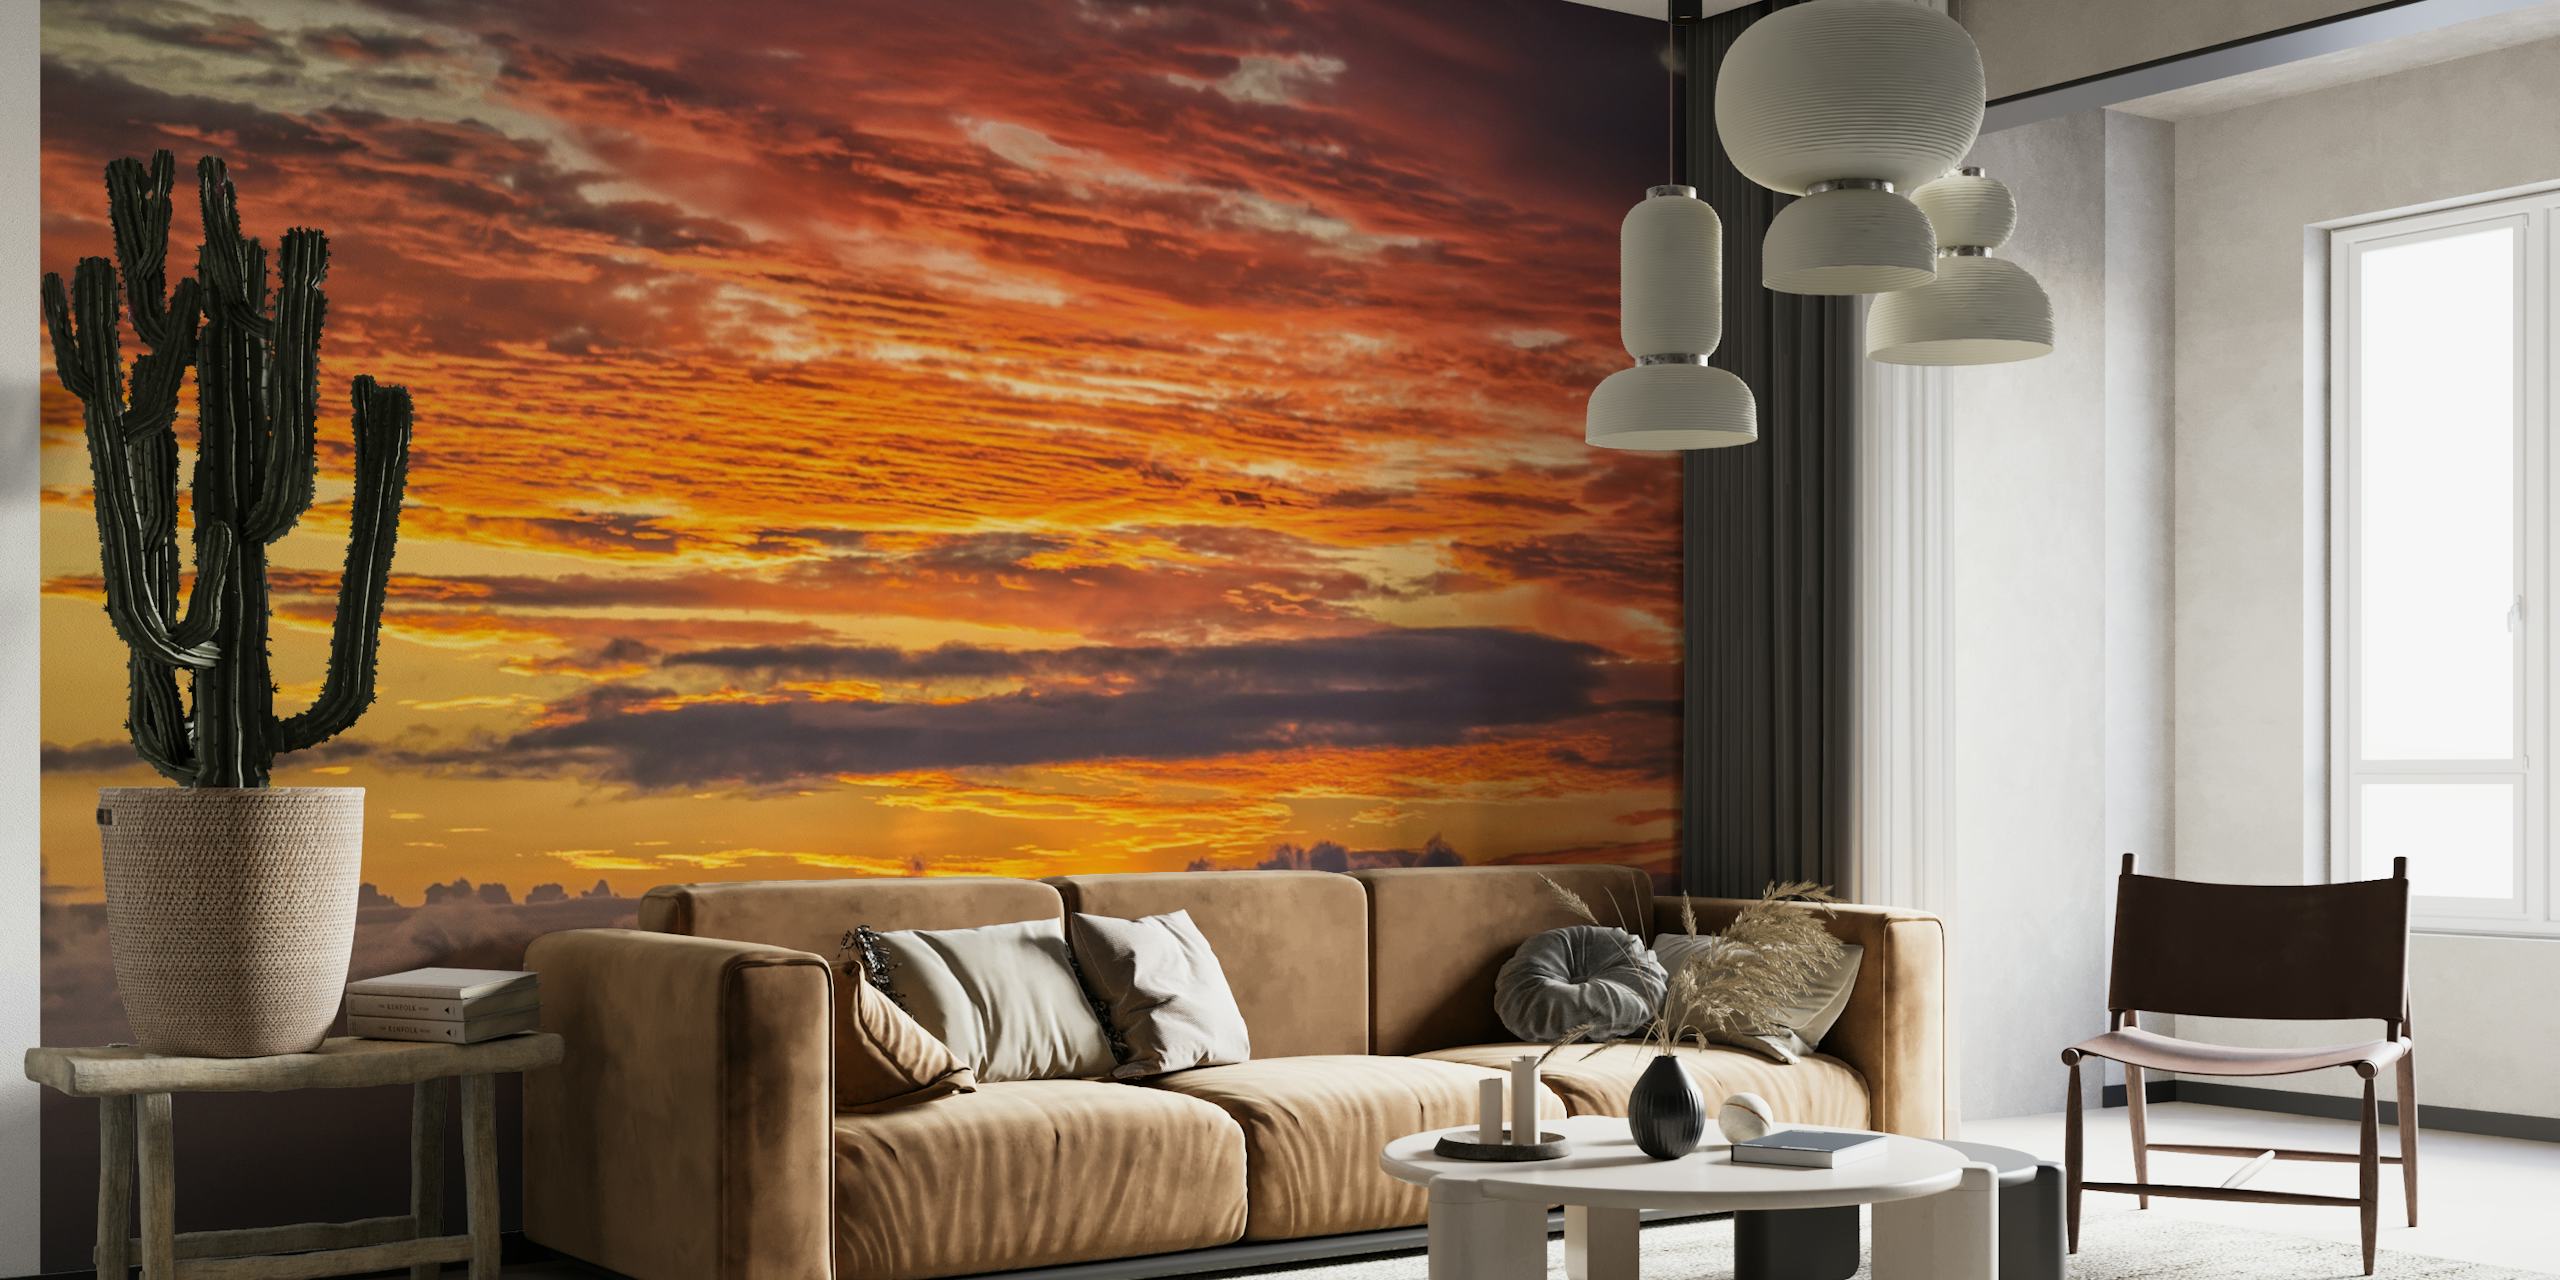 Sunrise  over the ocean wallpaper